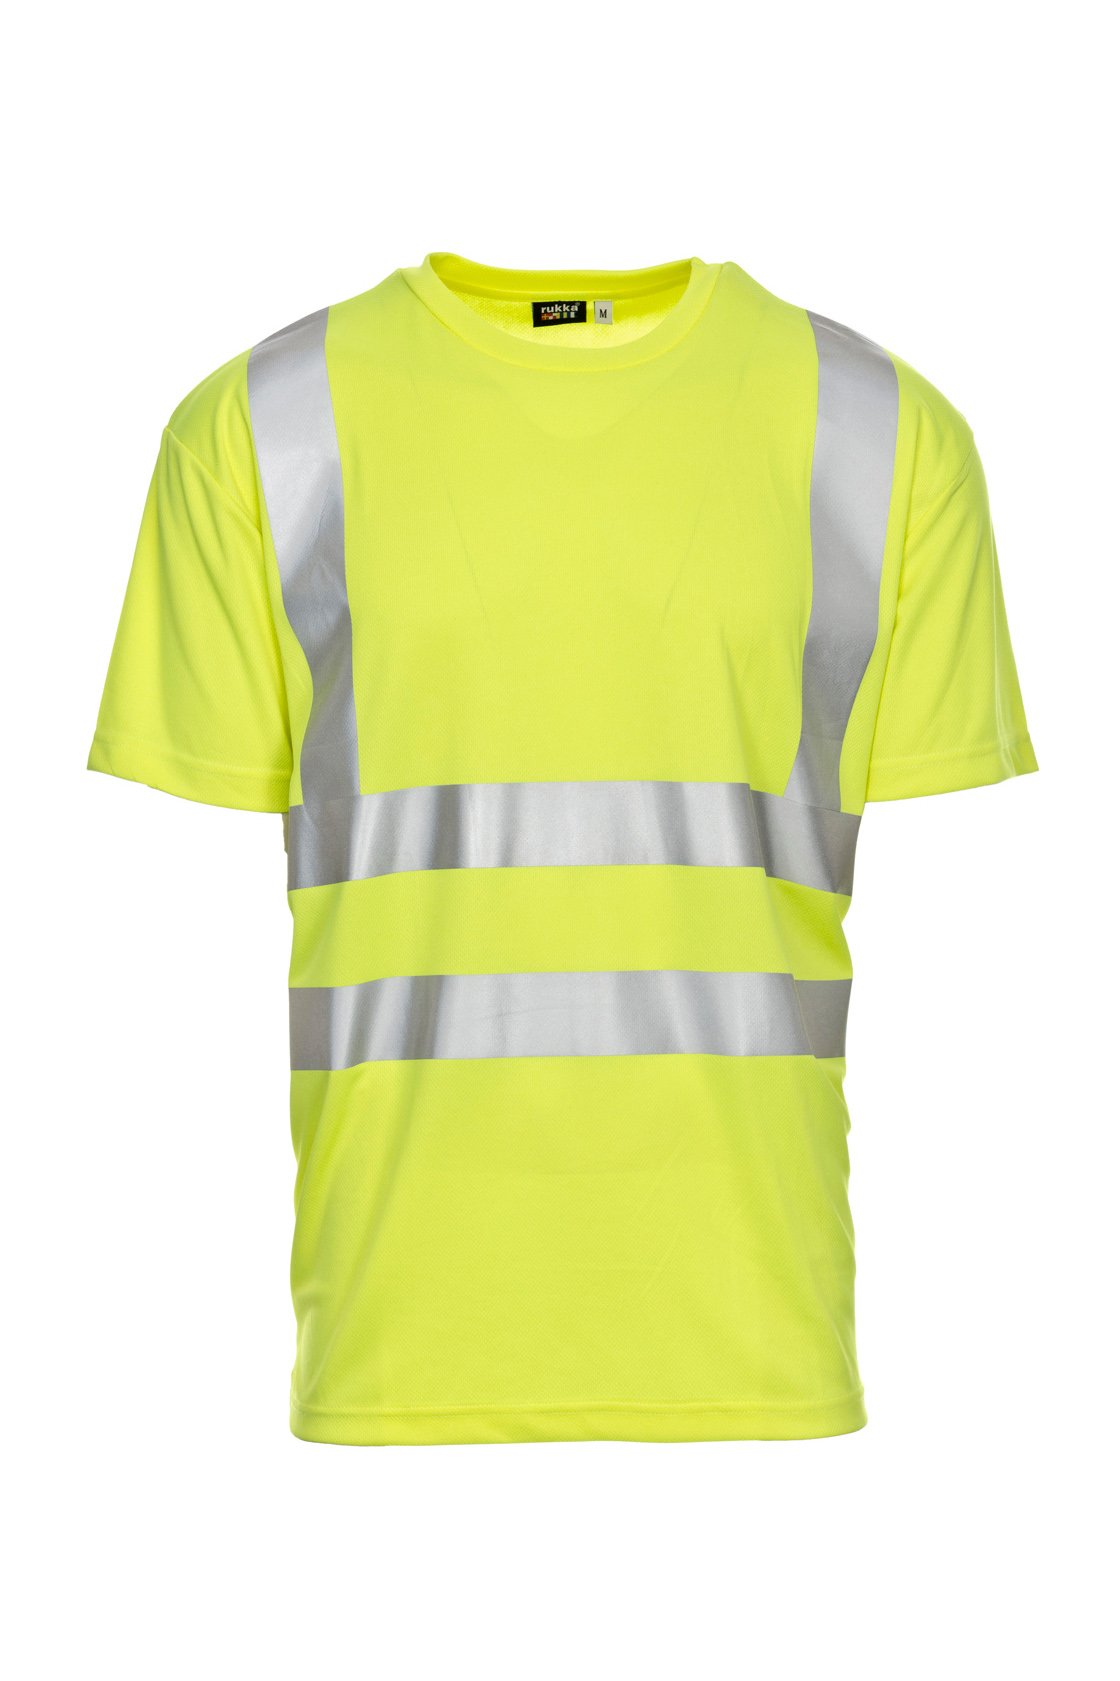 Warnschutz-T-Shirt, fluorescent orange, ISO 20471 Kl. 2